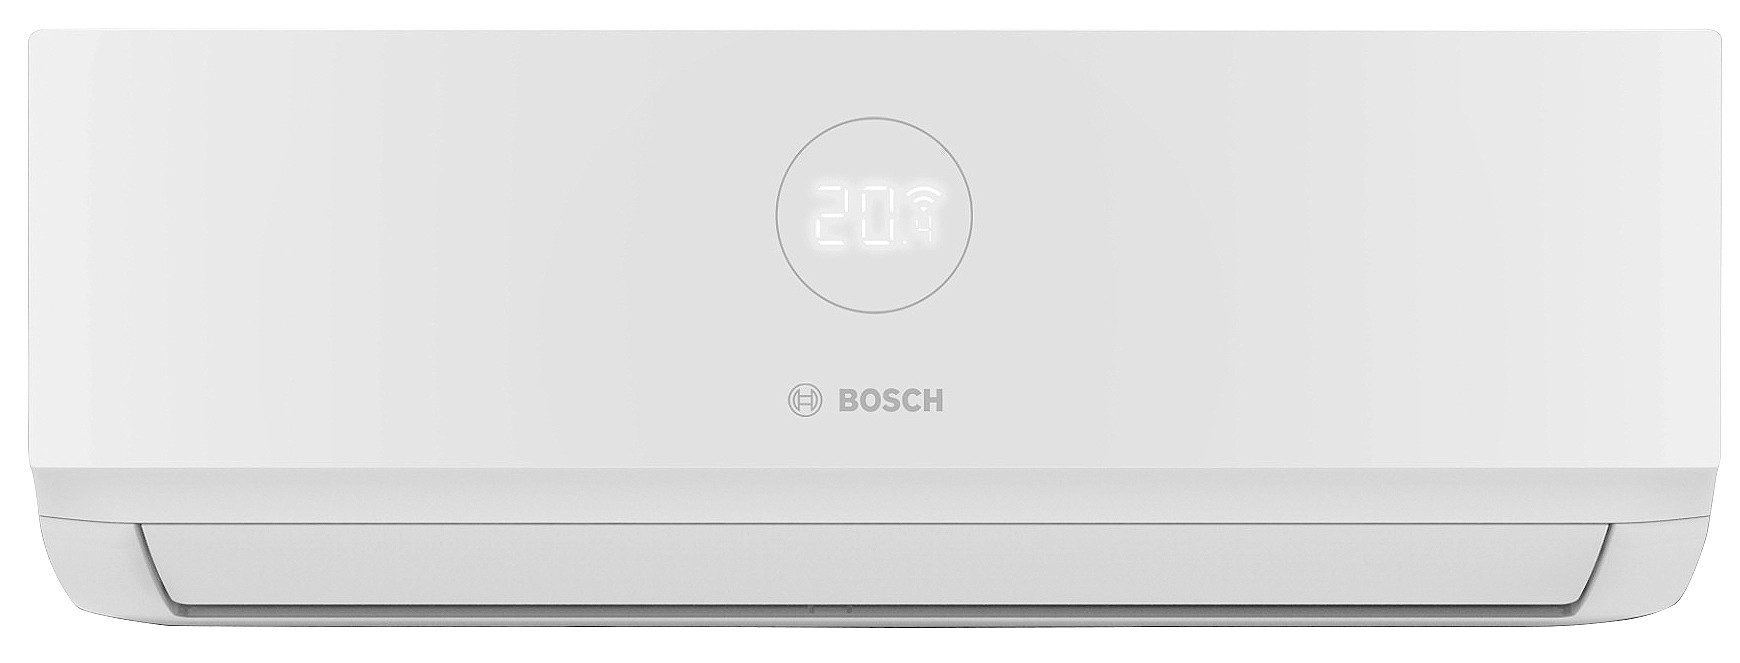 Купить внутренний блок мультисплит-системы Bosch CL3000iU W 53 E, 5,3 кВт в Киеве